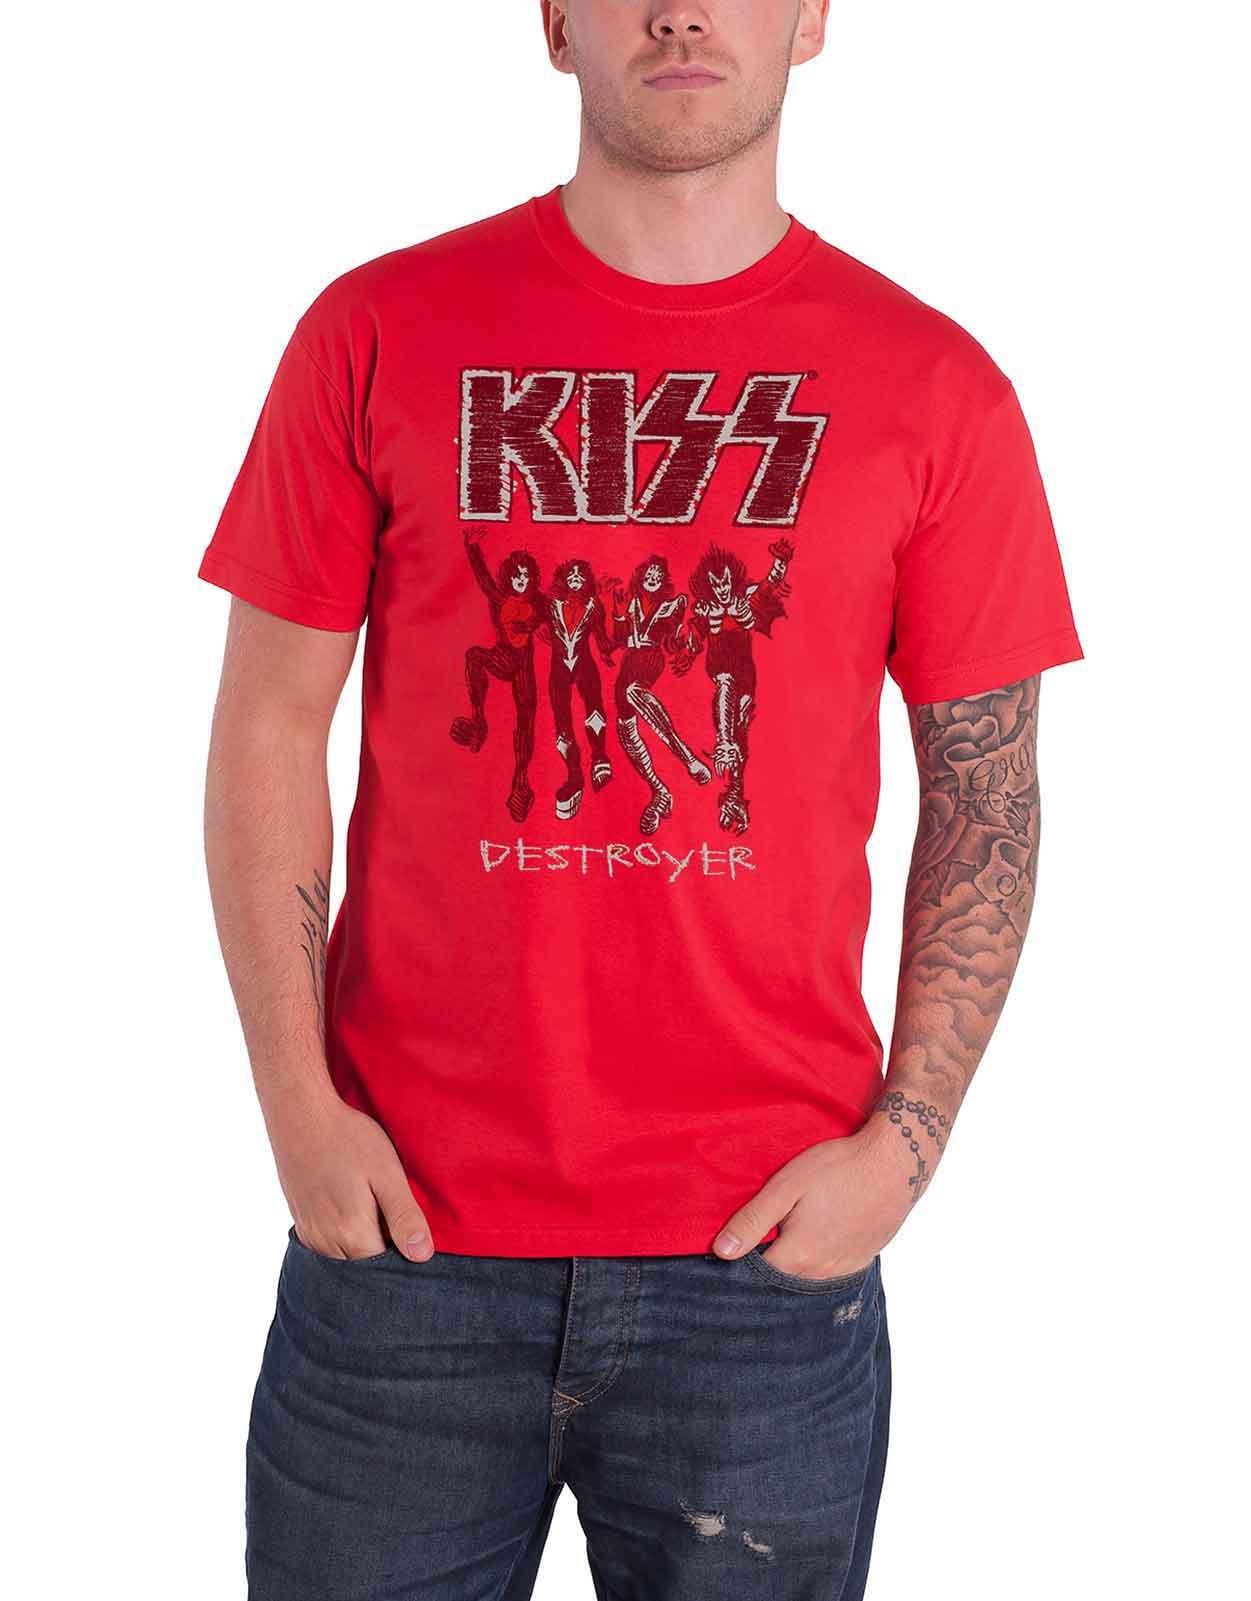 Футболка с эскизом Разрушителя KISS, красный темно фиолетовая мужская черная футболка с графическим рисунком футболка с фанатом рок группы размер s 3xl модная футболка топ футболка